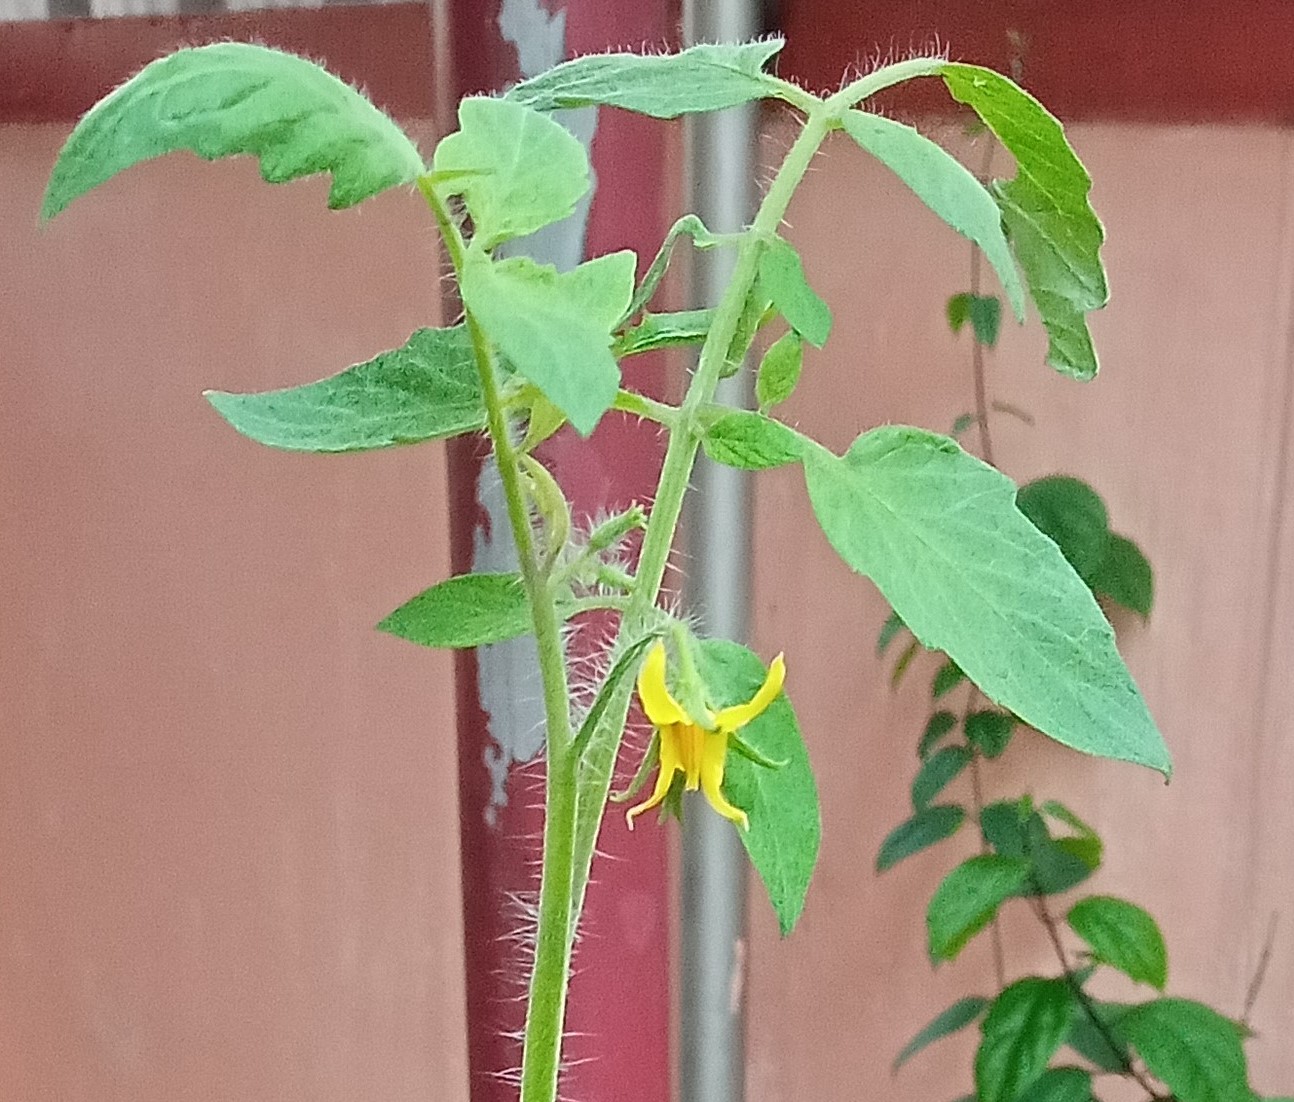 Tomato flower (Solanum lycopersicum)